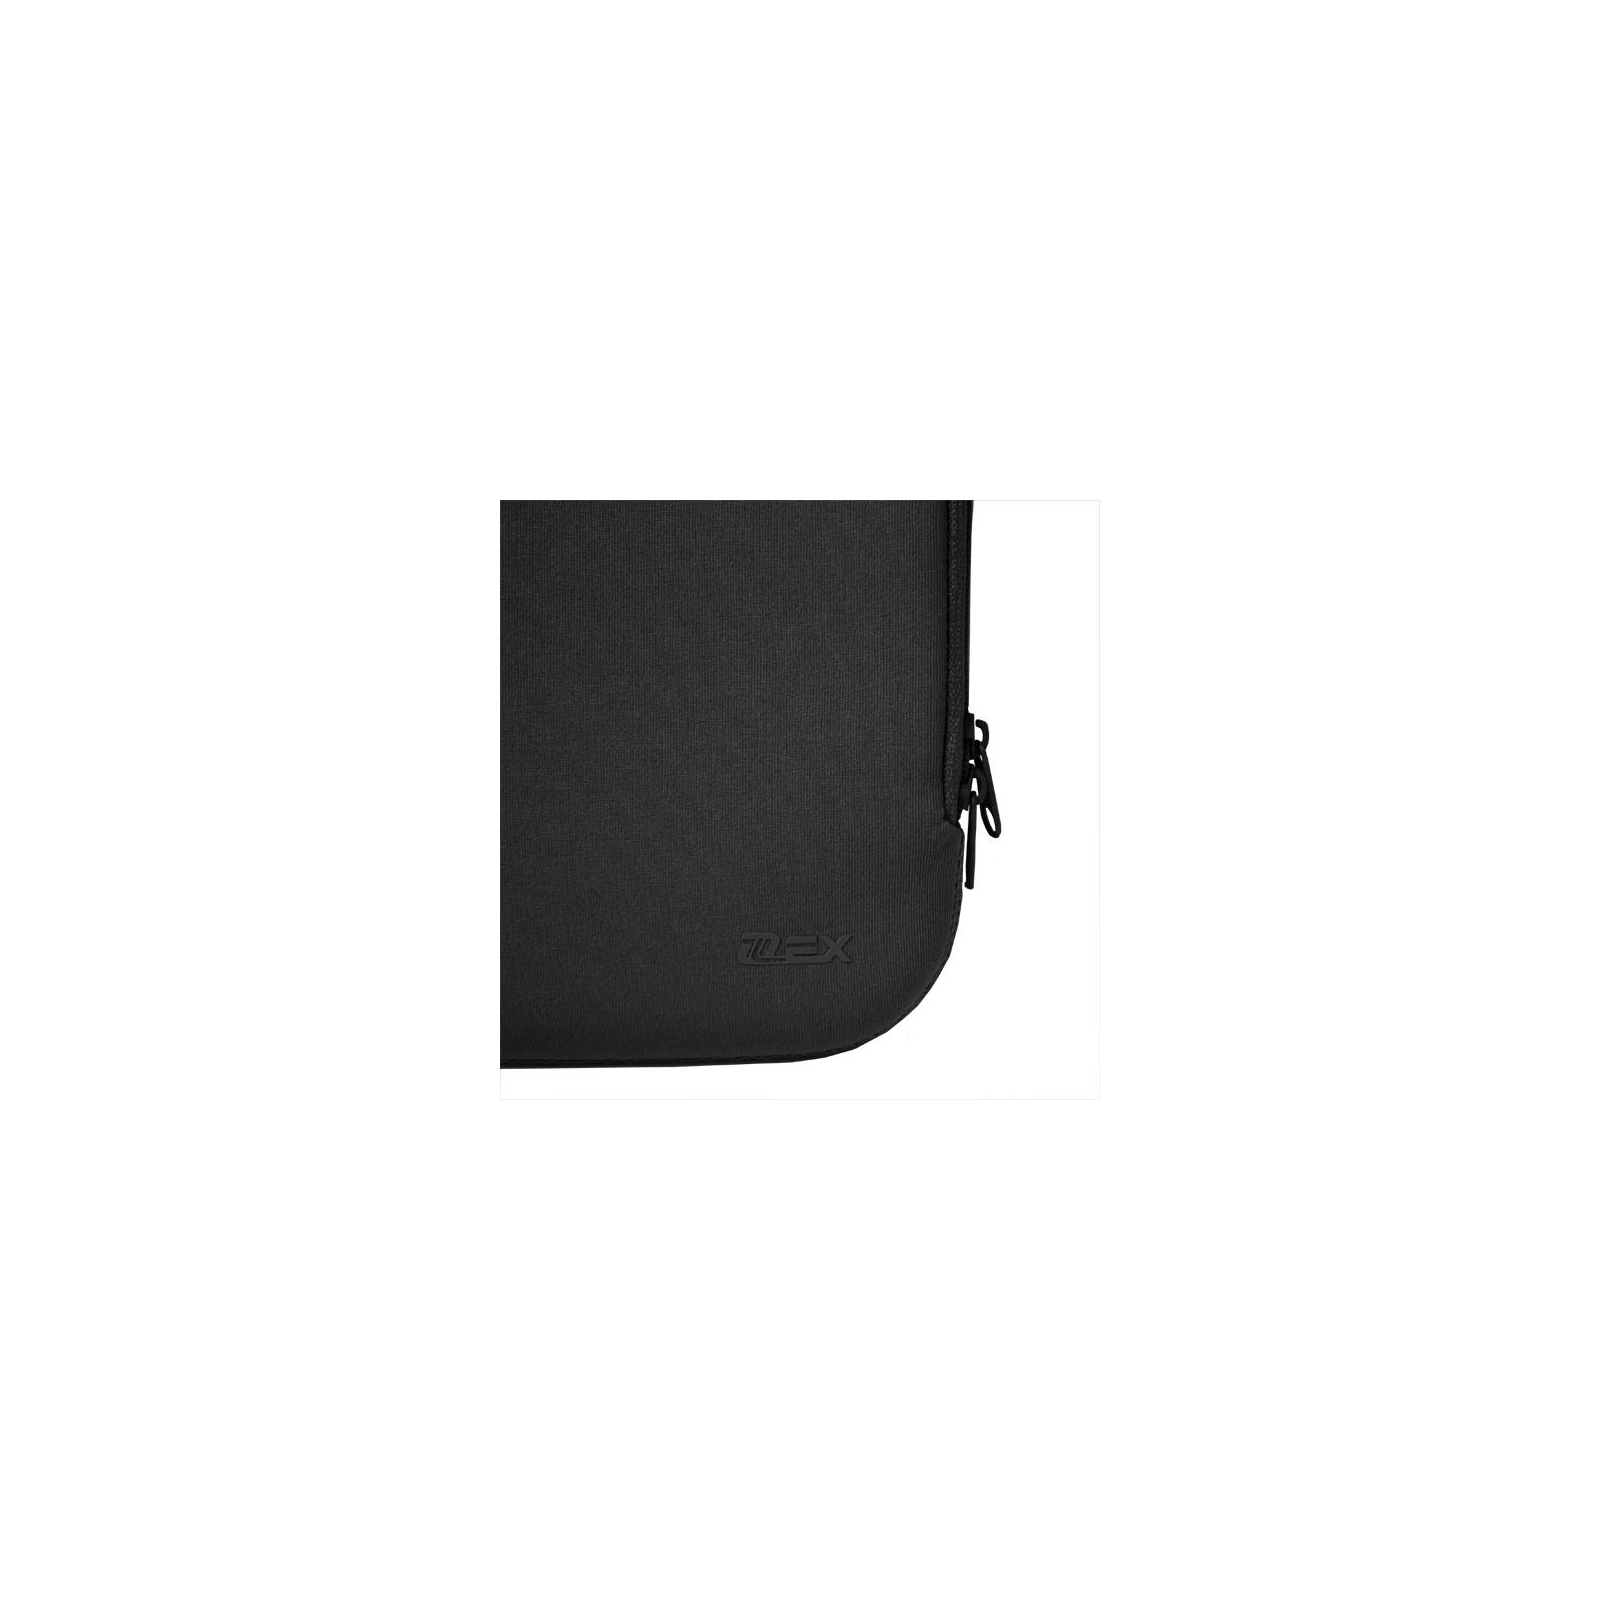 Чехол для планшета D-Lex 7-8 black (LXTC-3107-BK) изображение 4